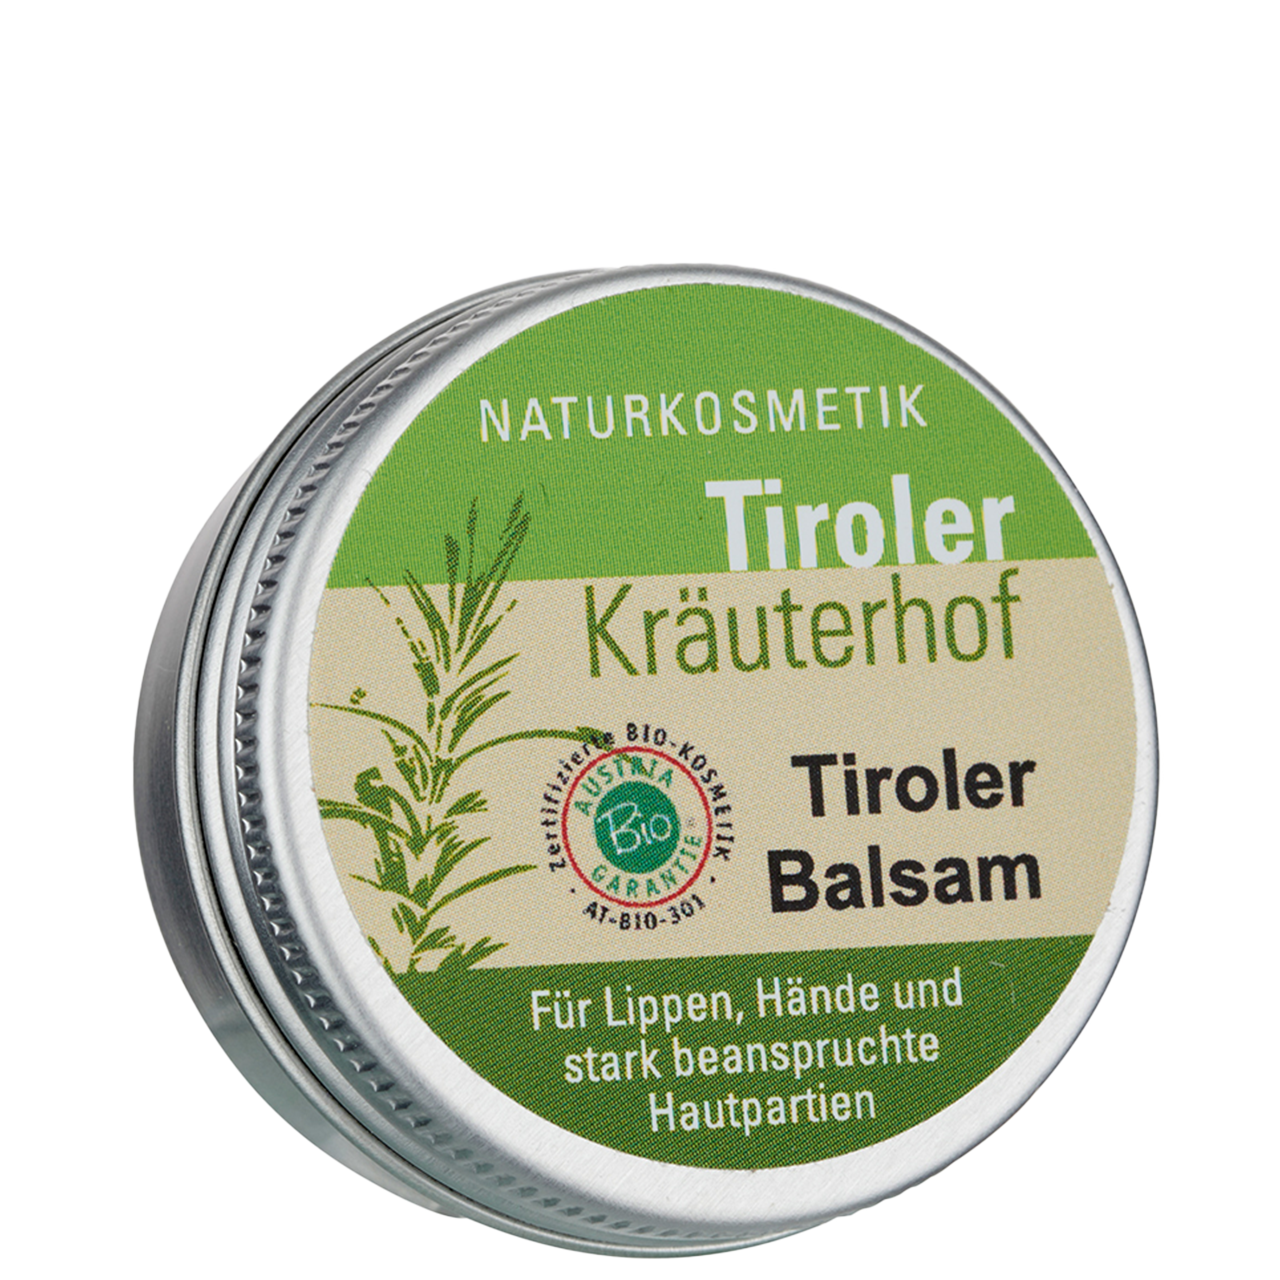 Tiroler Balsam - Handtiegel 10ml von Tiroler Kräuterhof